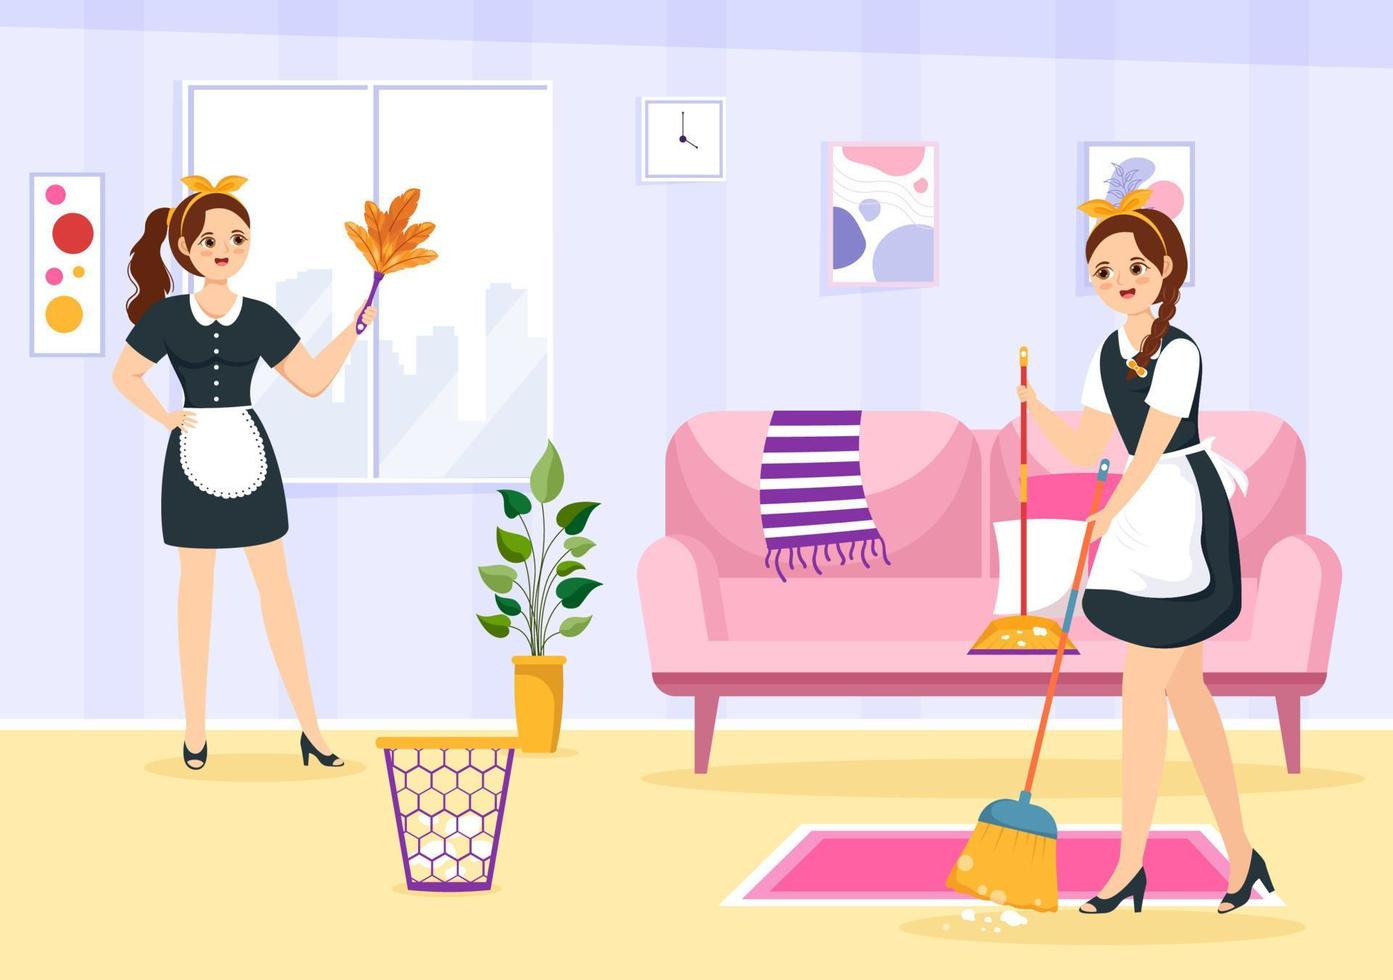 Fachmann Mädchen Maid Illustration von Reinigung Bedienung tragen ihr Uniform mit Schürze zum sauber ein Haus im eben Karikatur Hand gezeichnet Vorlagen vektor